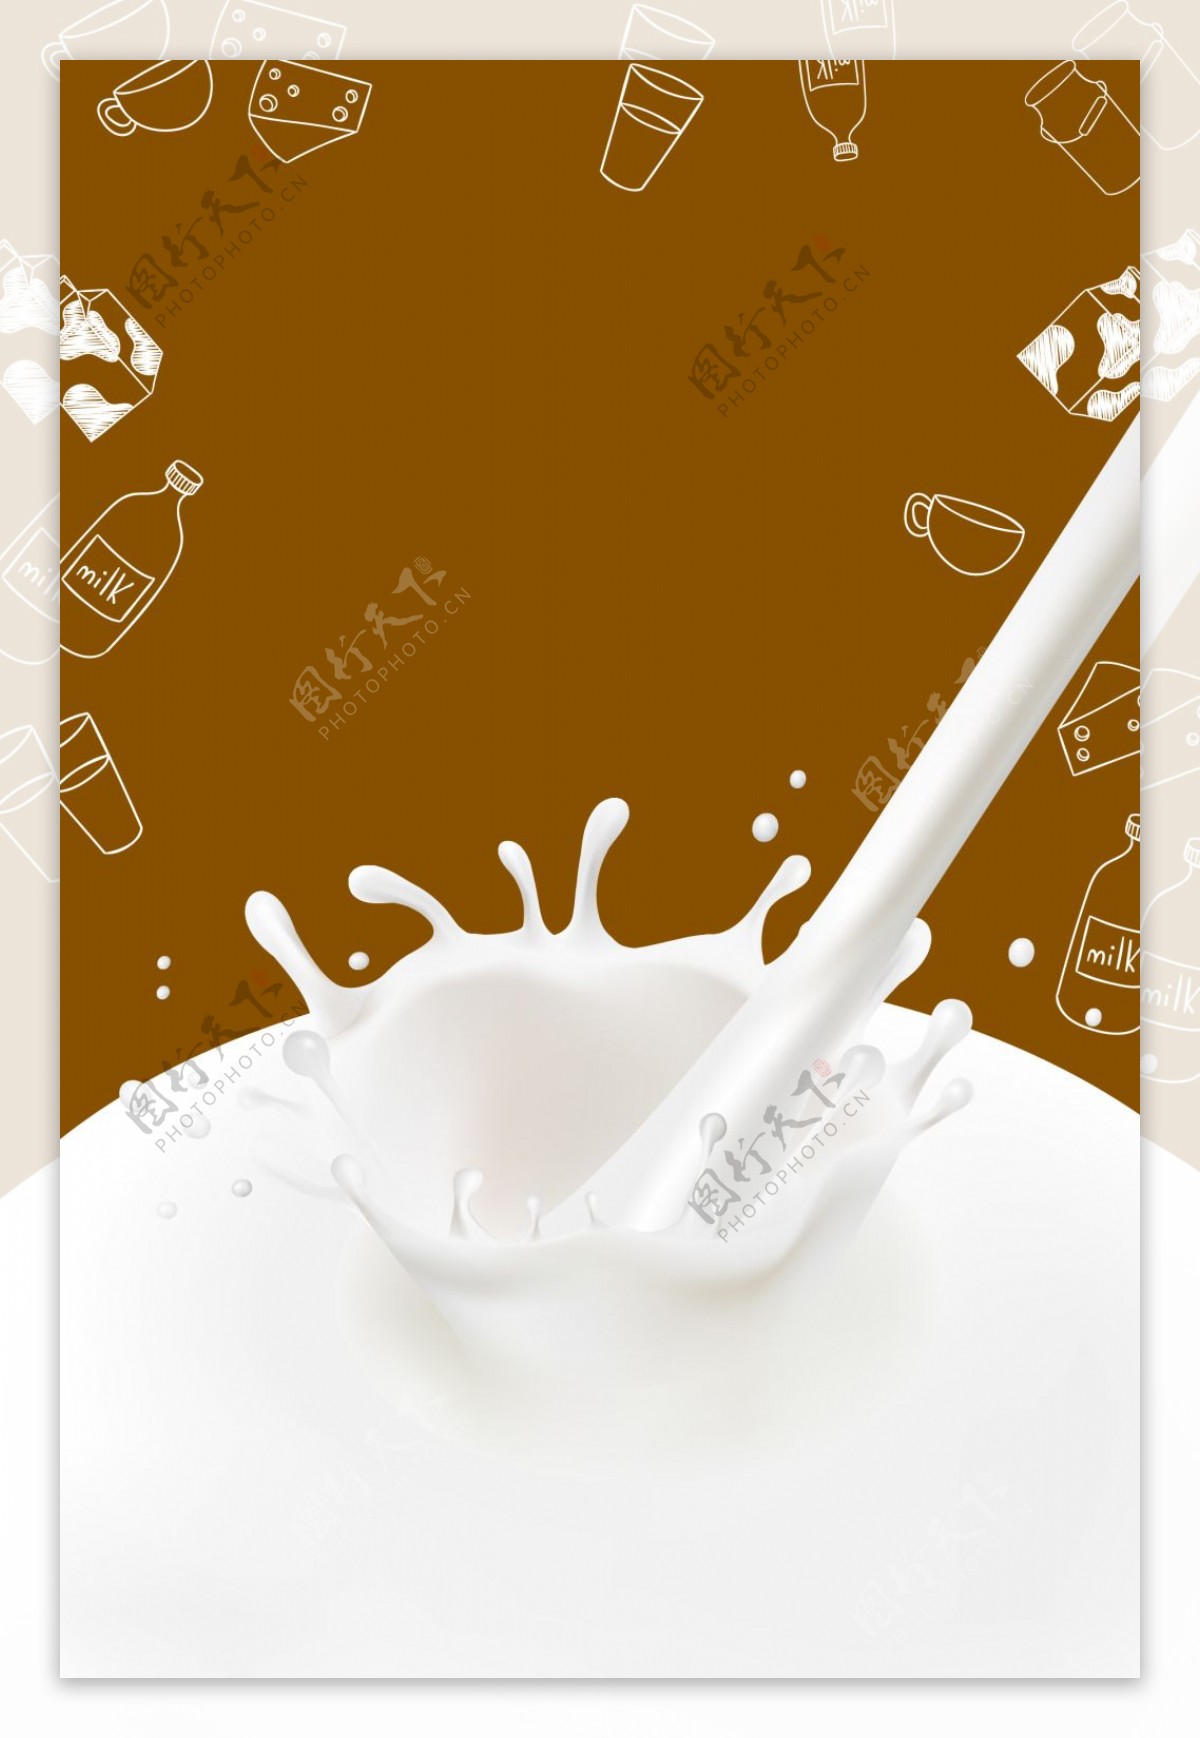 矢量酸奶牛奶奶制品美食背景